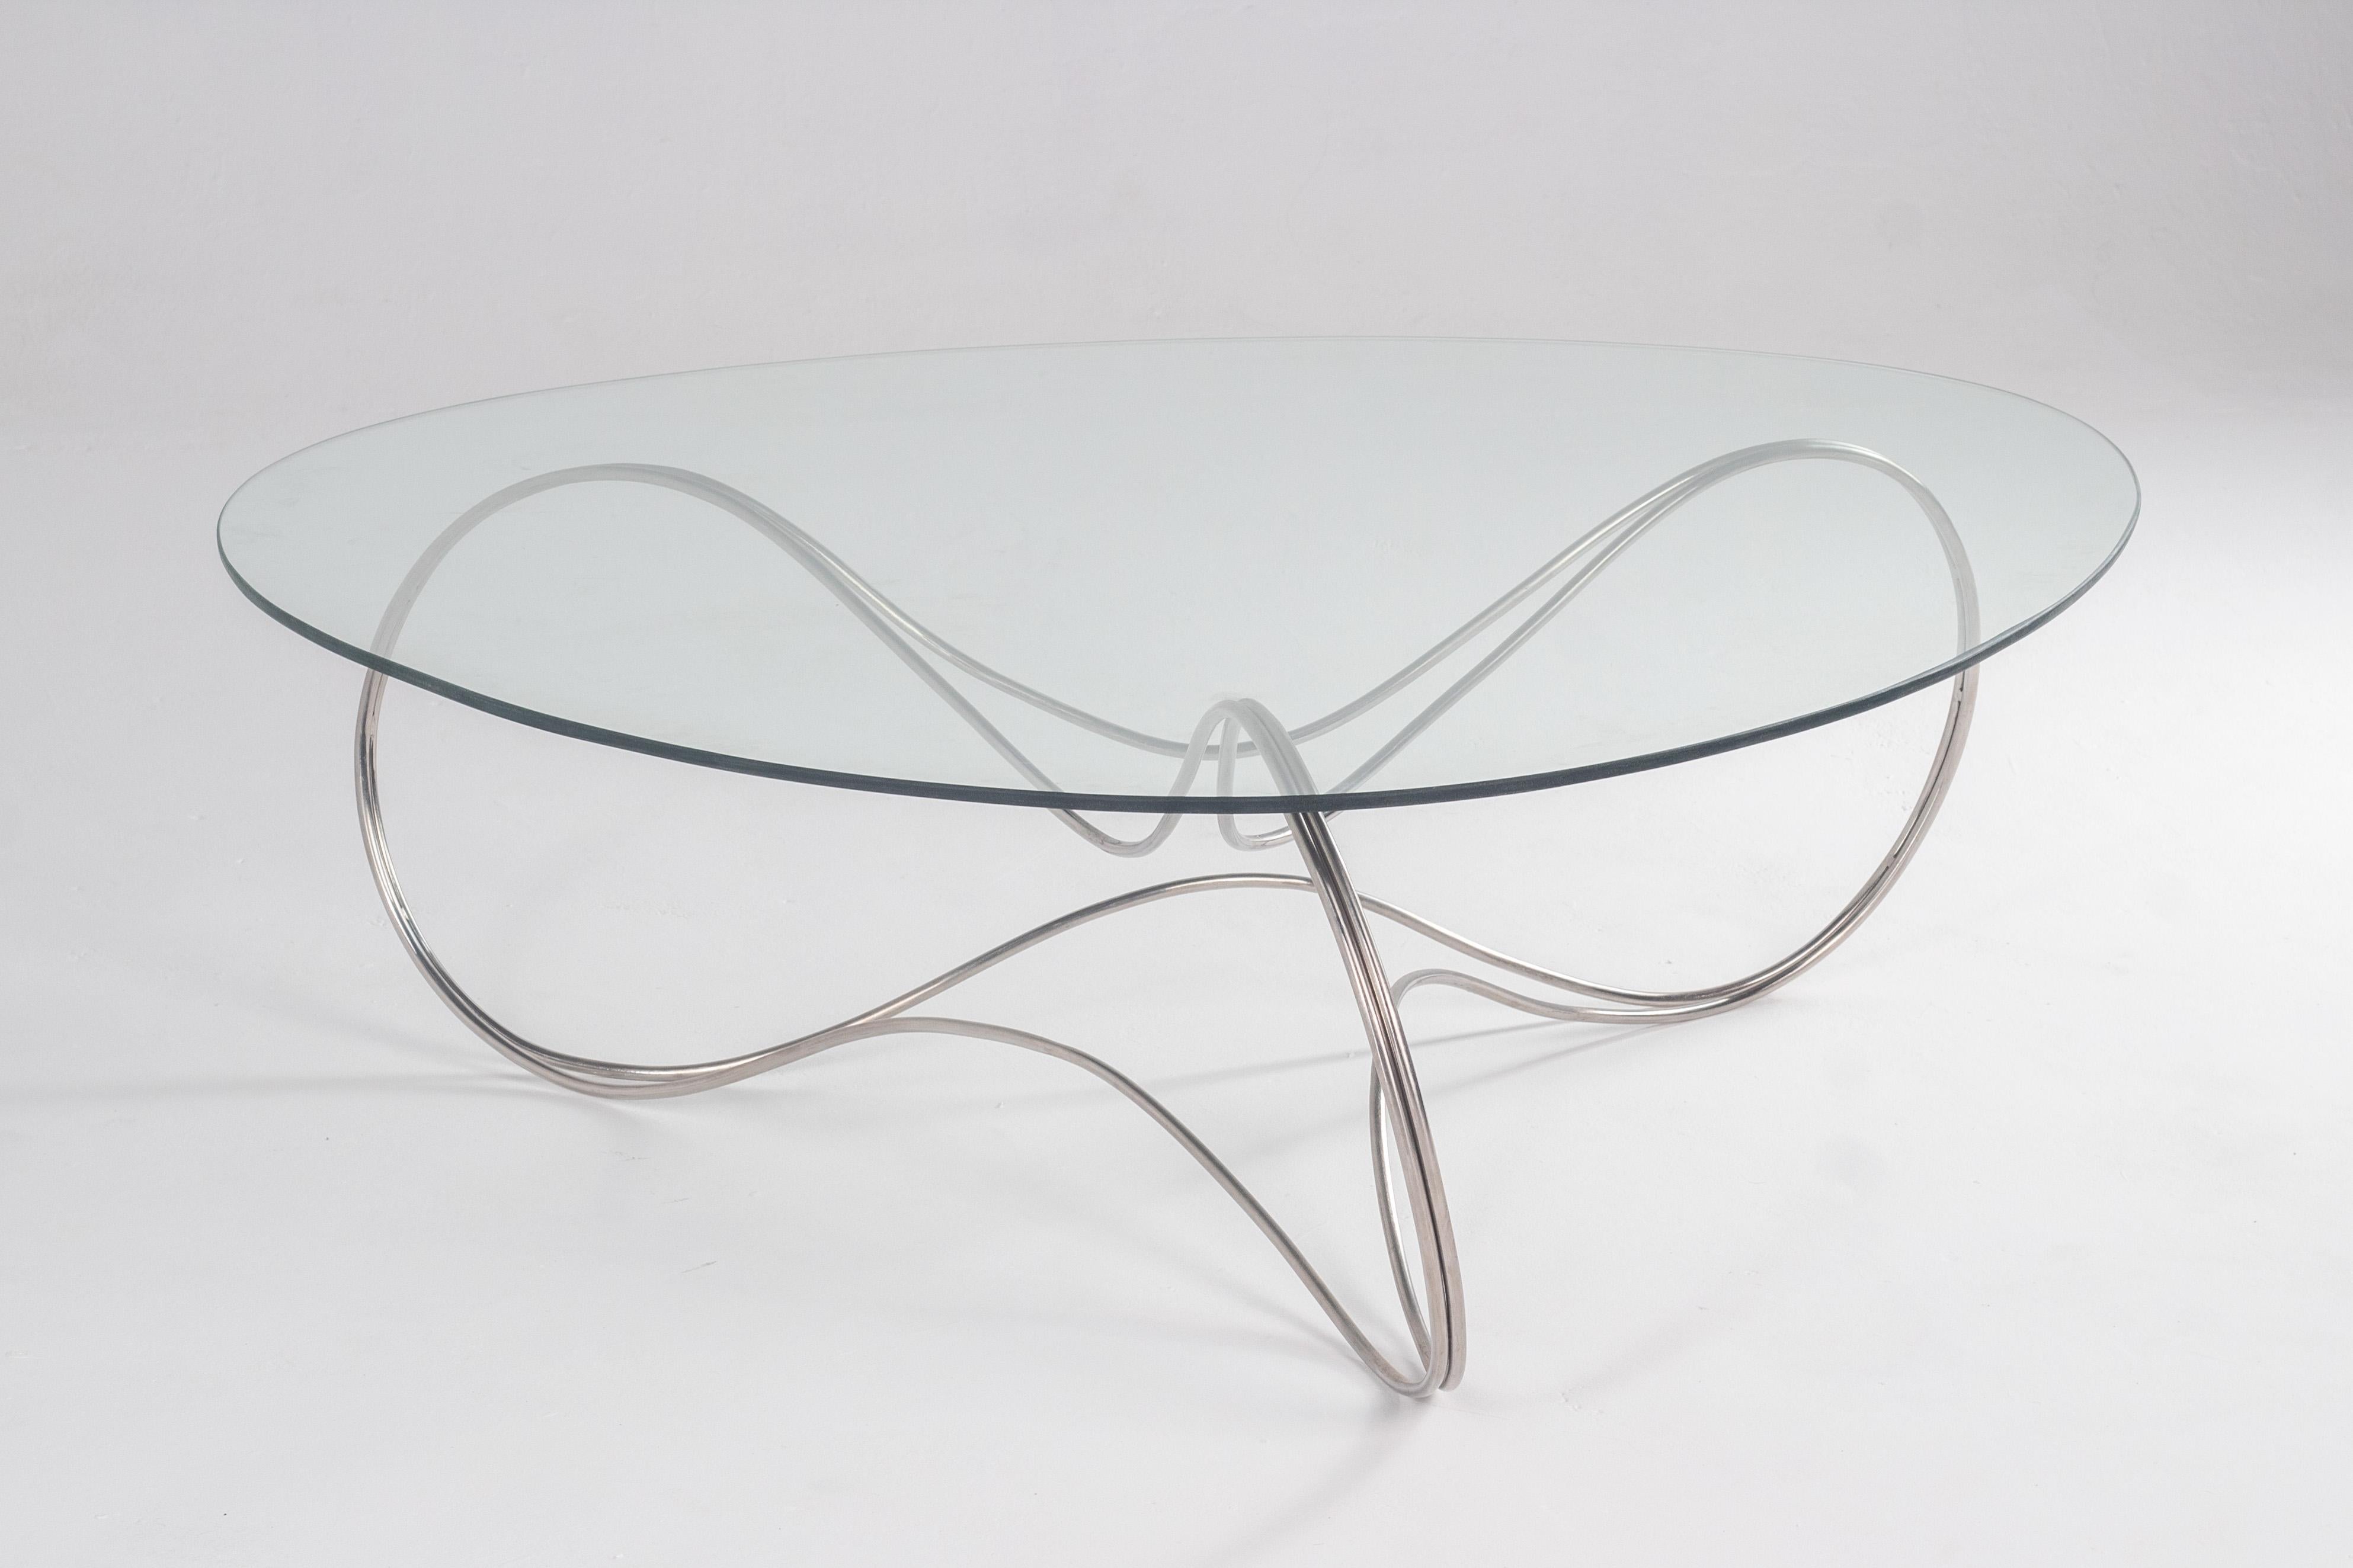 La Balance Table est un prototype exquis fabriqué à partir de tiges en acier inoxydable poli, témoignant d'un savoir-faire artisanal méticuleux. L'objectif premier de sa création était d'obtenir un design à la fois minimaliste et élégant.

Inspirée